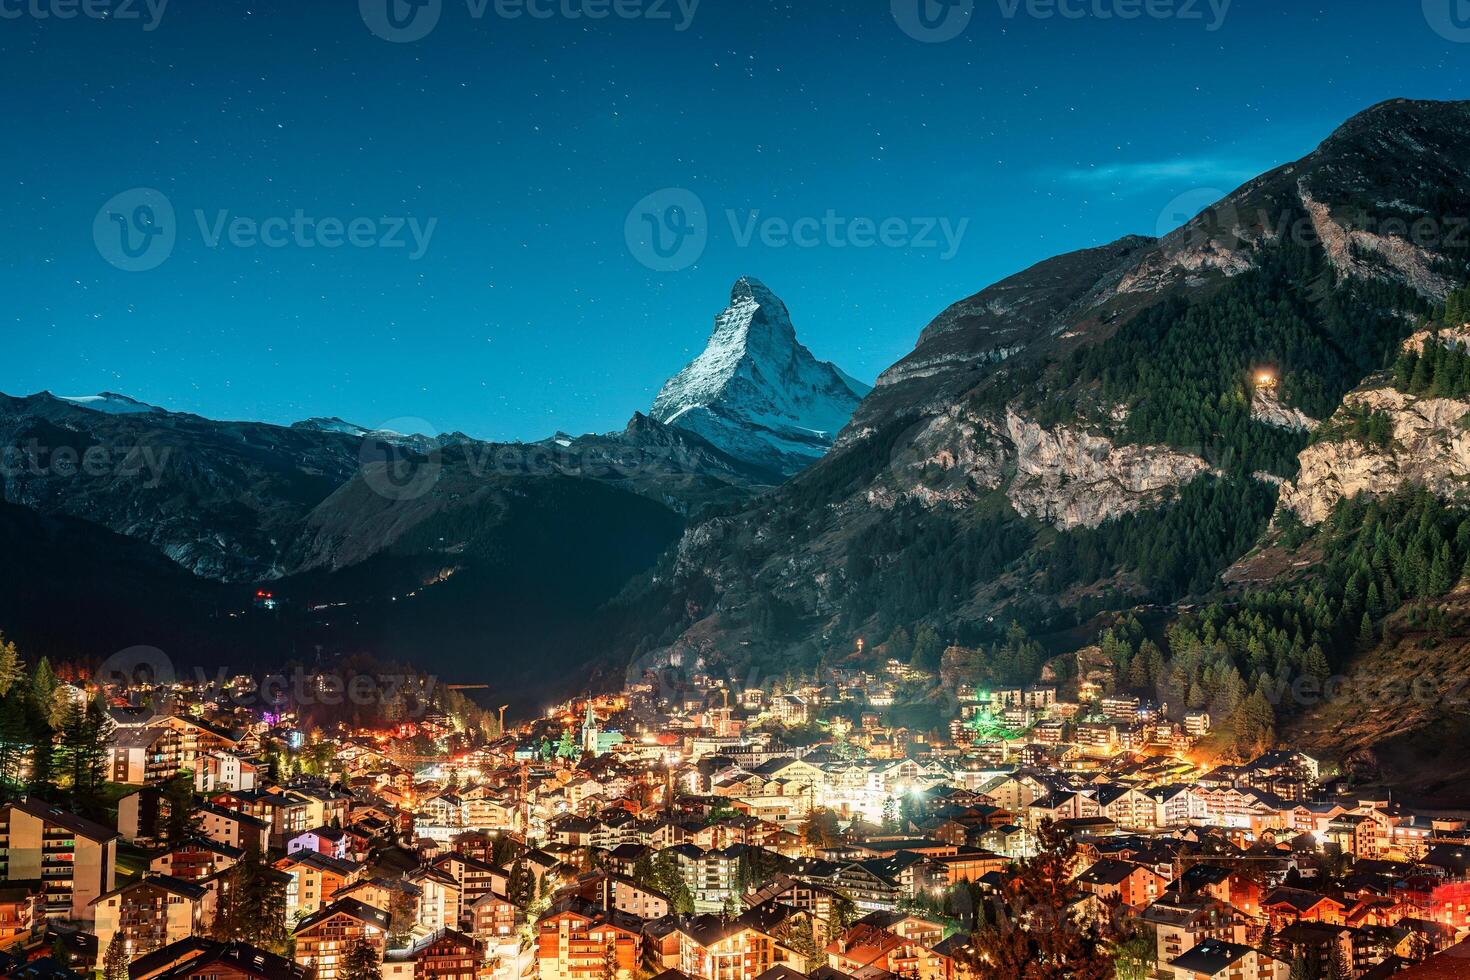 zermatt landelijk stad- gloeiend in de Alpen met matterhorn iconisch top in de nacht Bij Wallis, Zwitserland foto